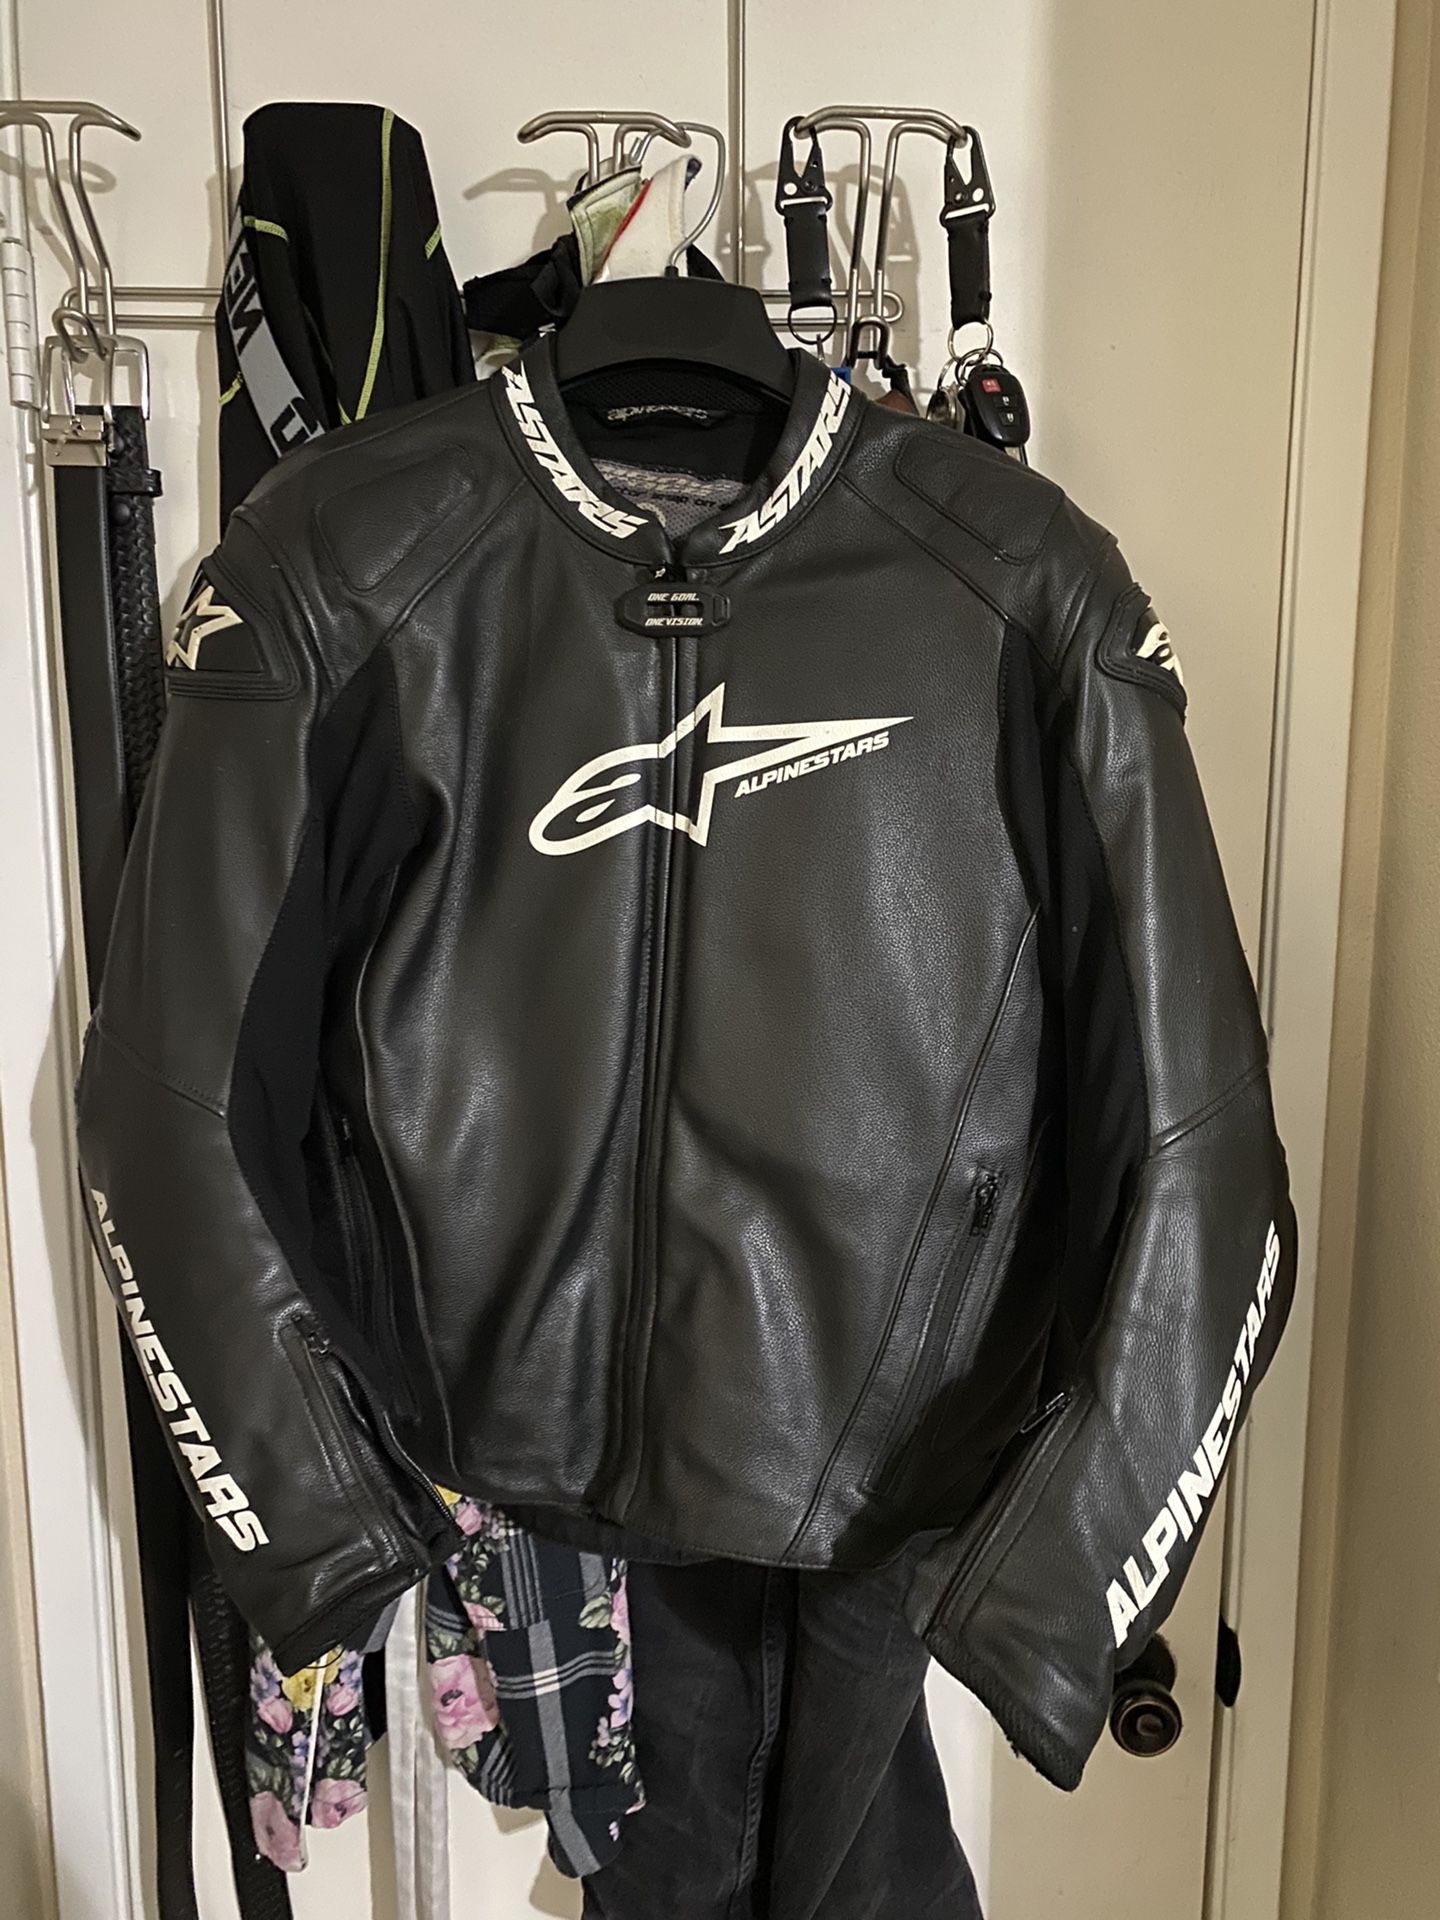 Alpinestars GP PRO LEATHER JACKET | Track Jacket | Motorcycle Jacket | Size 46 USA